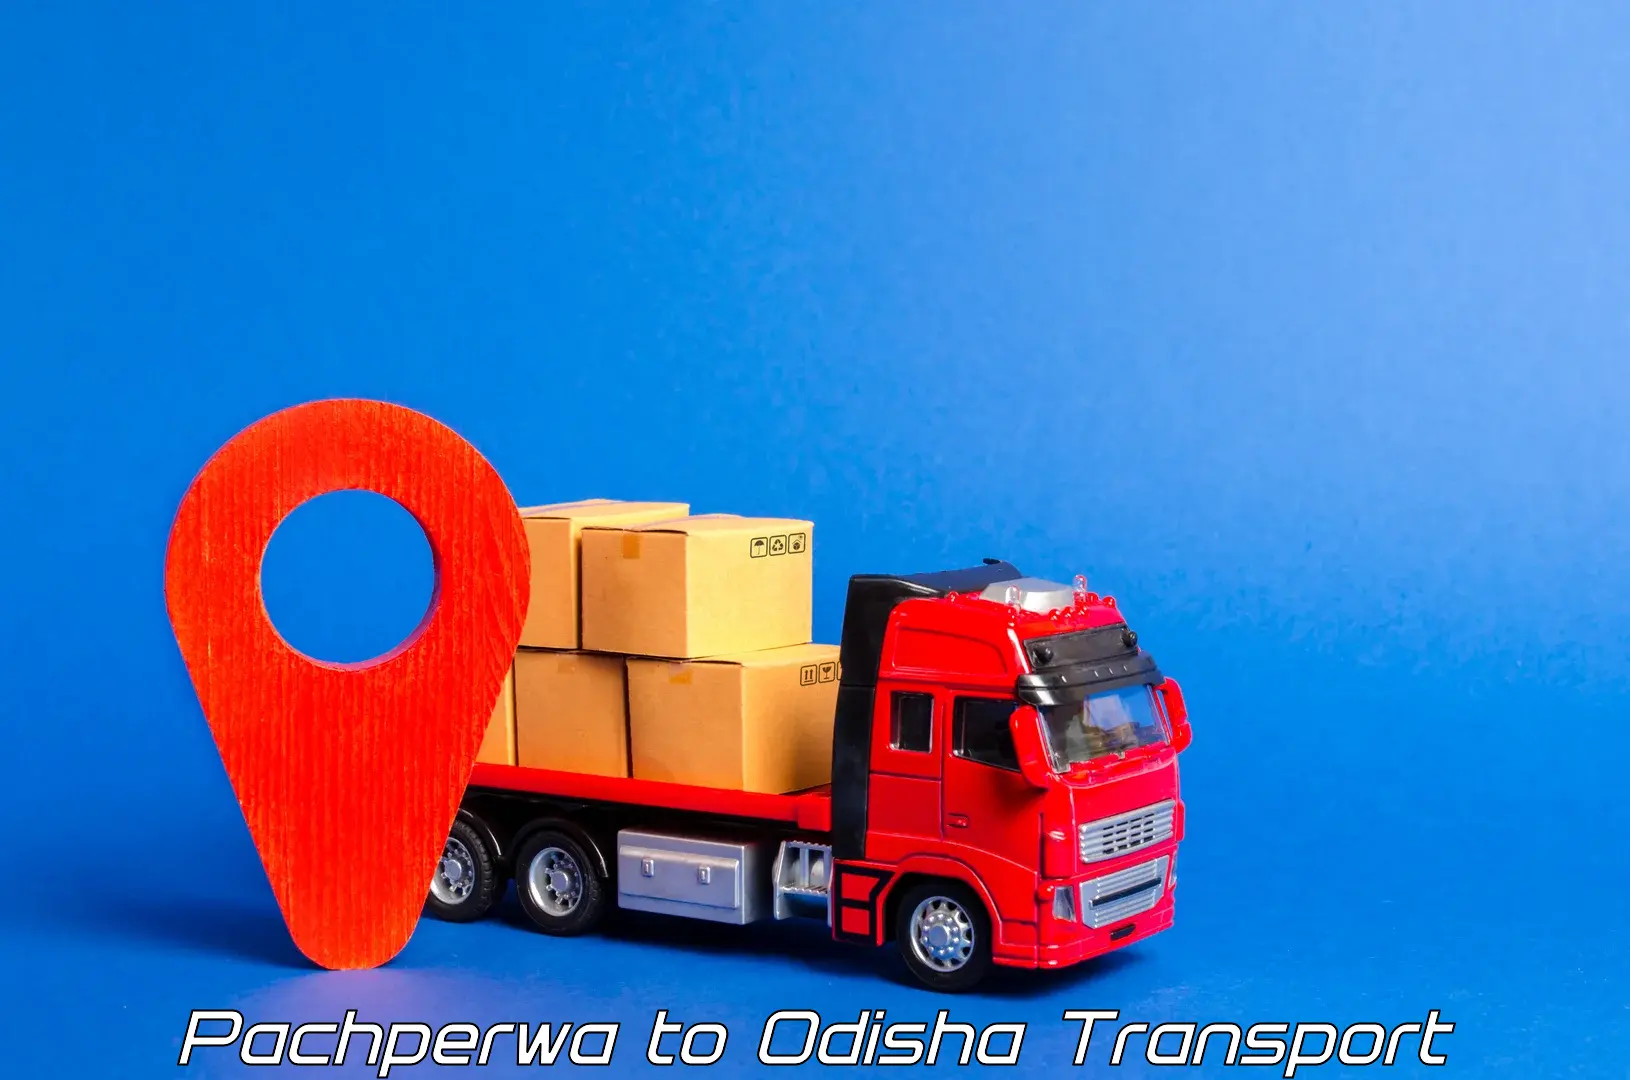 Furniture transport service Pachperwa to Sambalpur